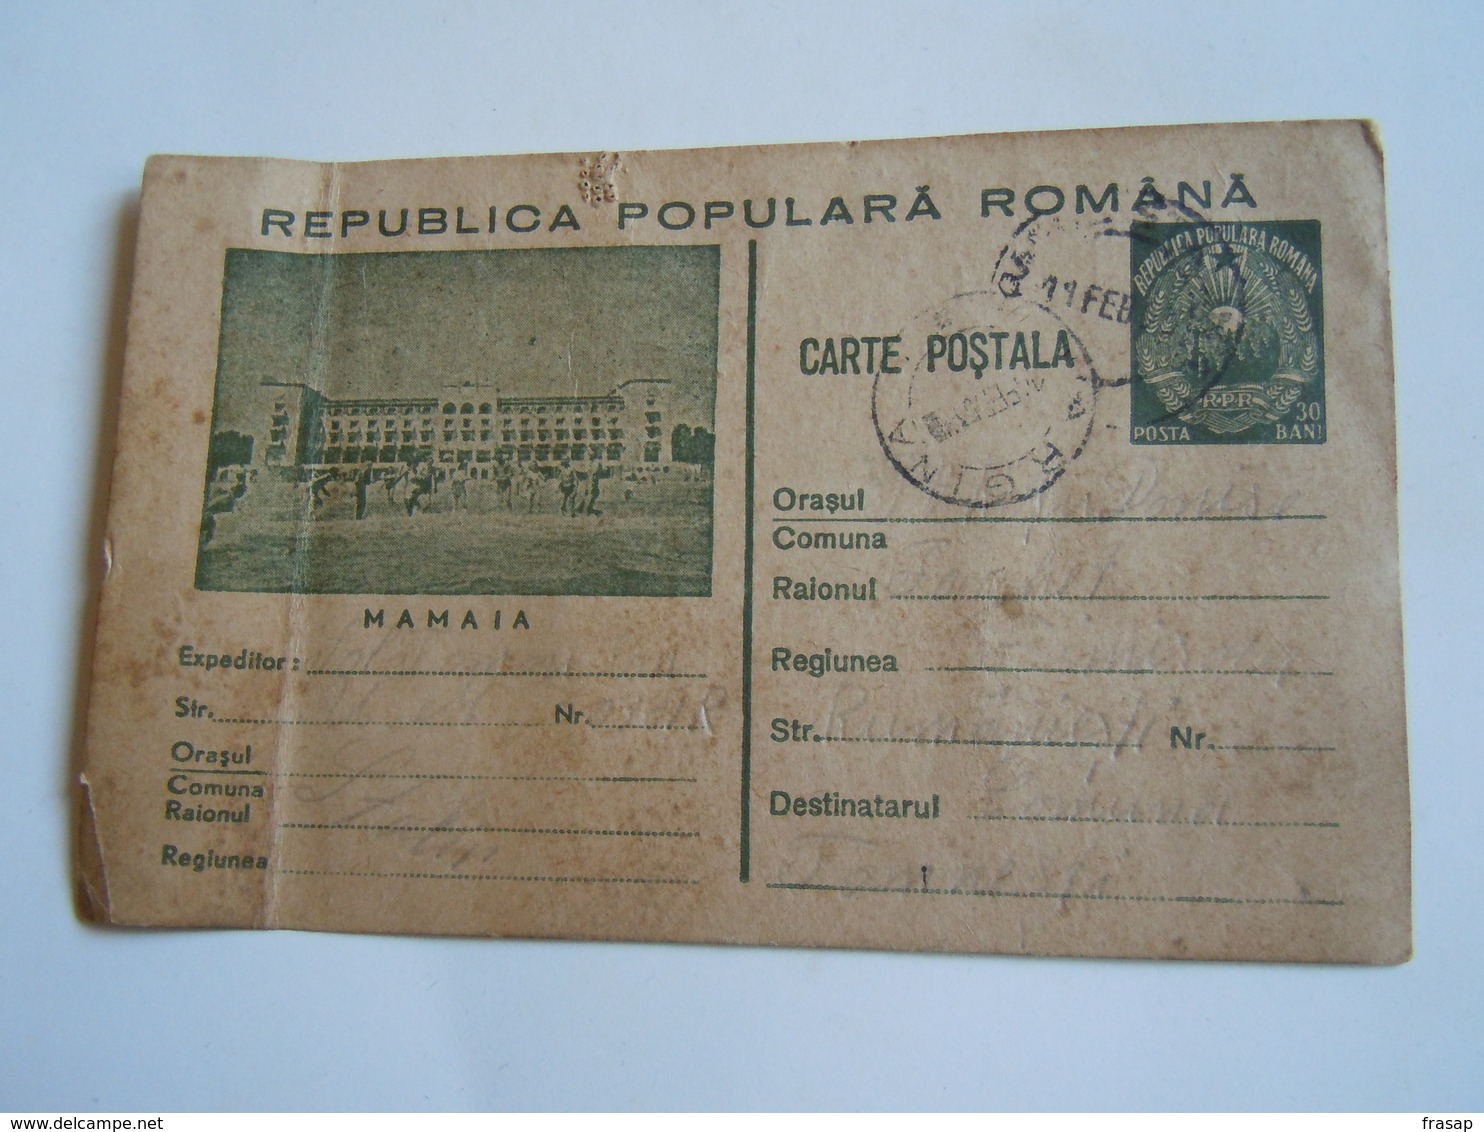 ROMANIA CARTA POSTALA 30 BANI - MAMAIA - Marcofilie